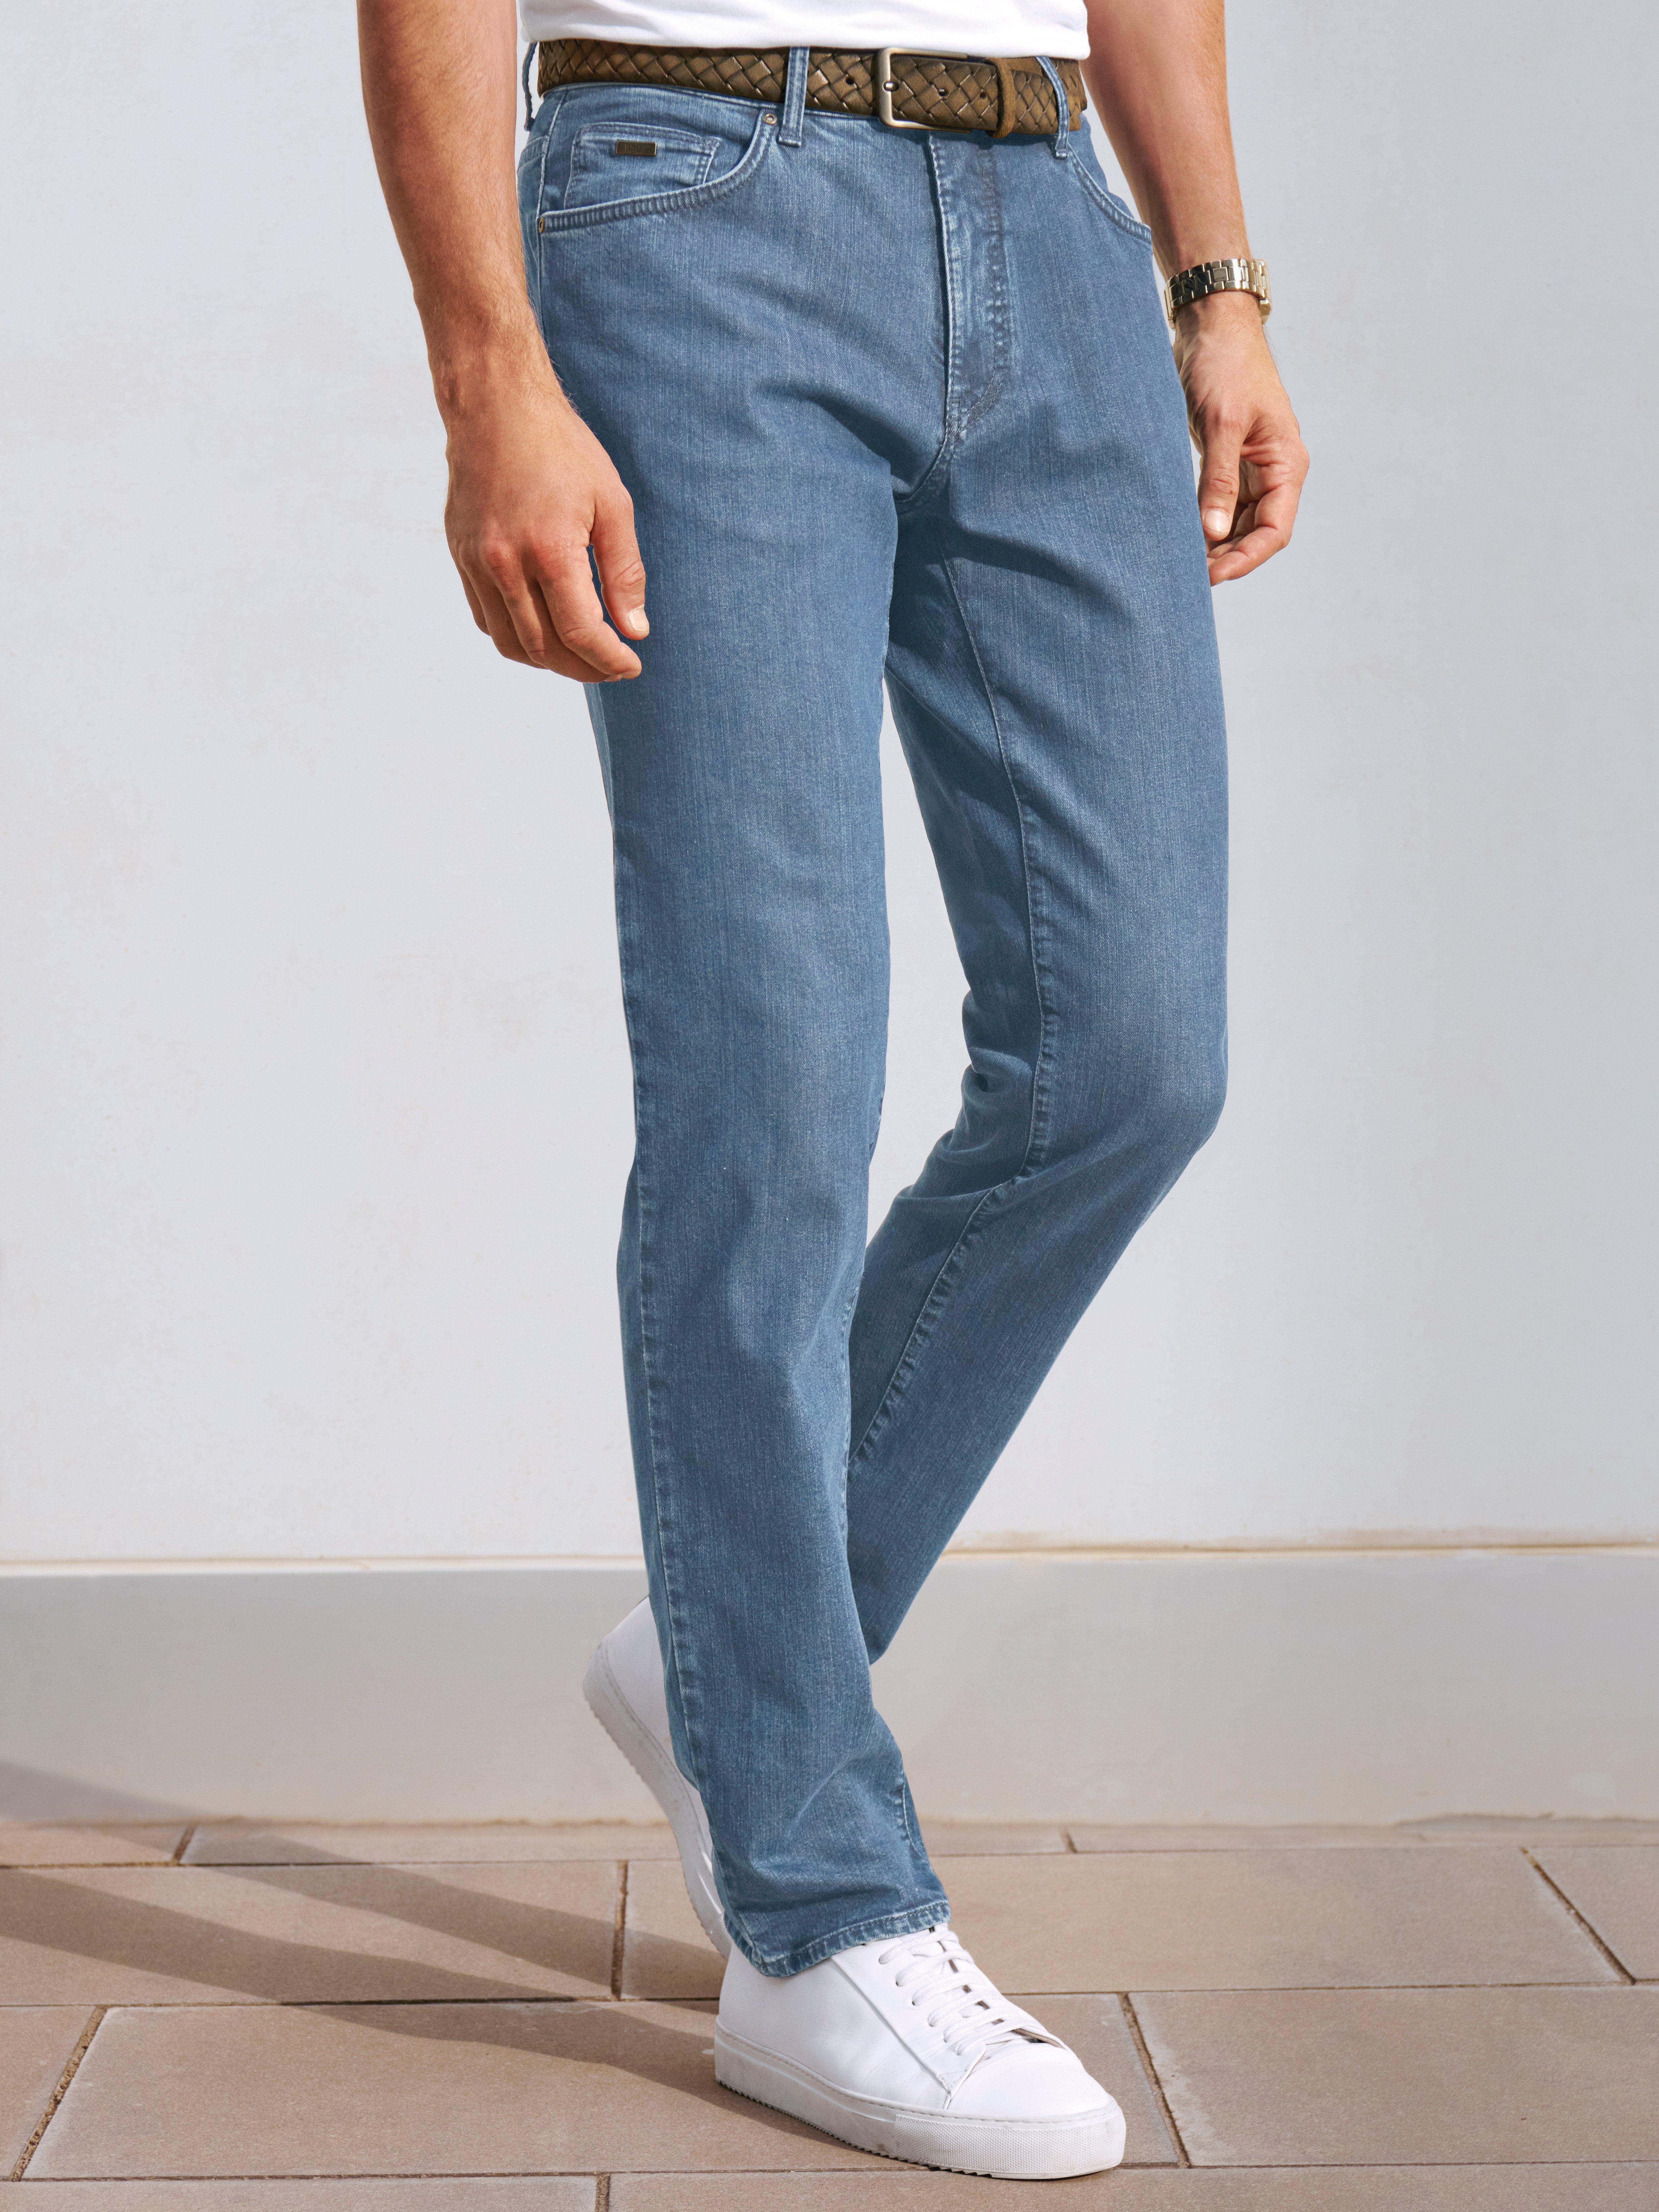 offer bh Rykke Brax Feel Good - Jeans model Cadiz Straight fit - Bleached denim